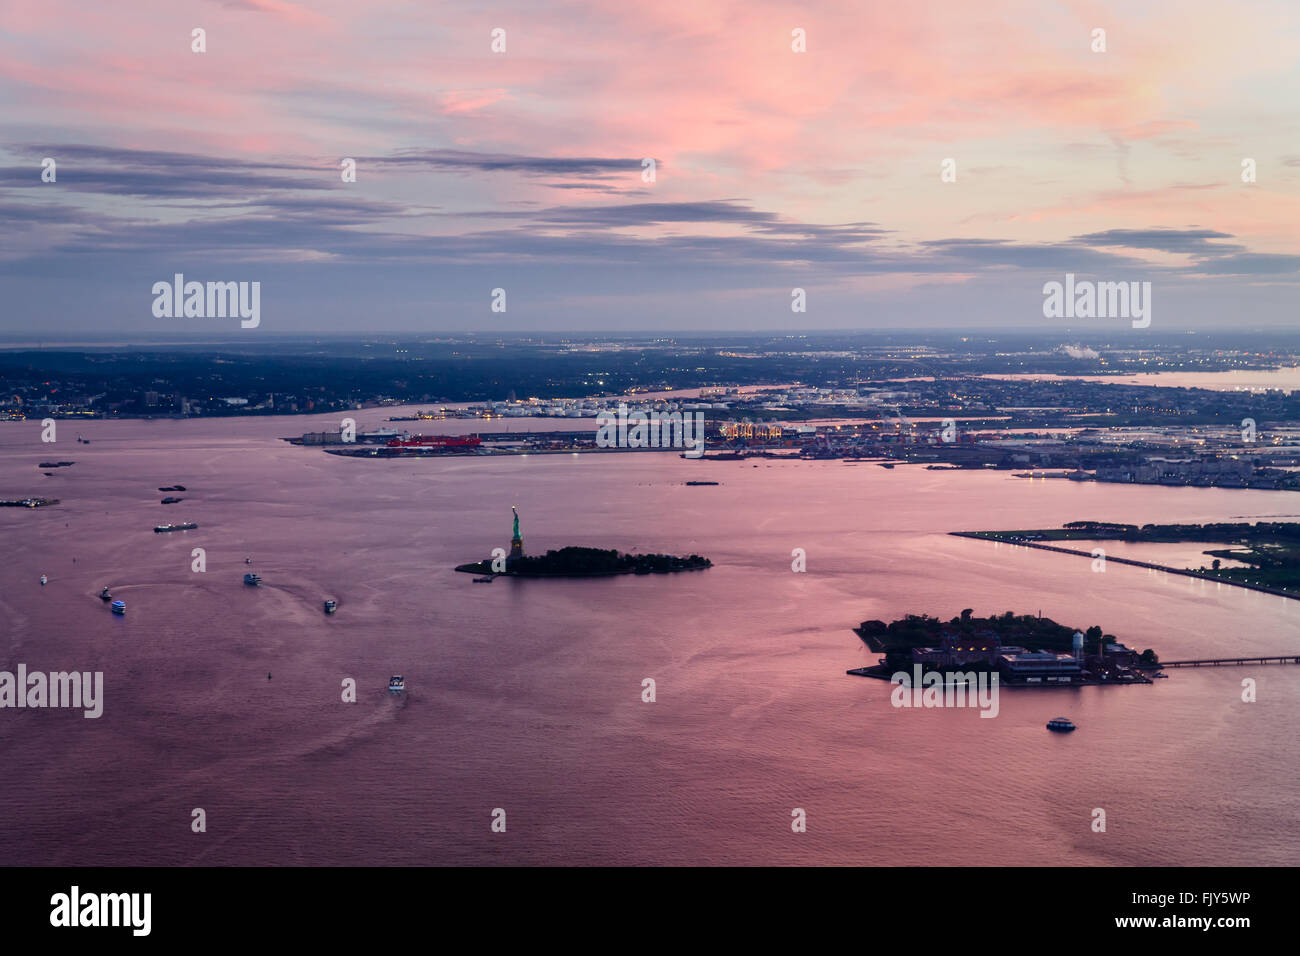 Luftaufnahme von Manhattan, Ellis Island, die Freiheitsstatue, Liberty Port in New Jersey mit rosa Sonnenuntergang Reflektionen Stockfoto